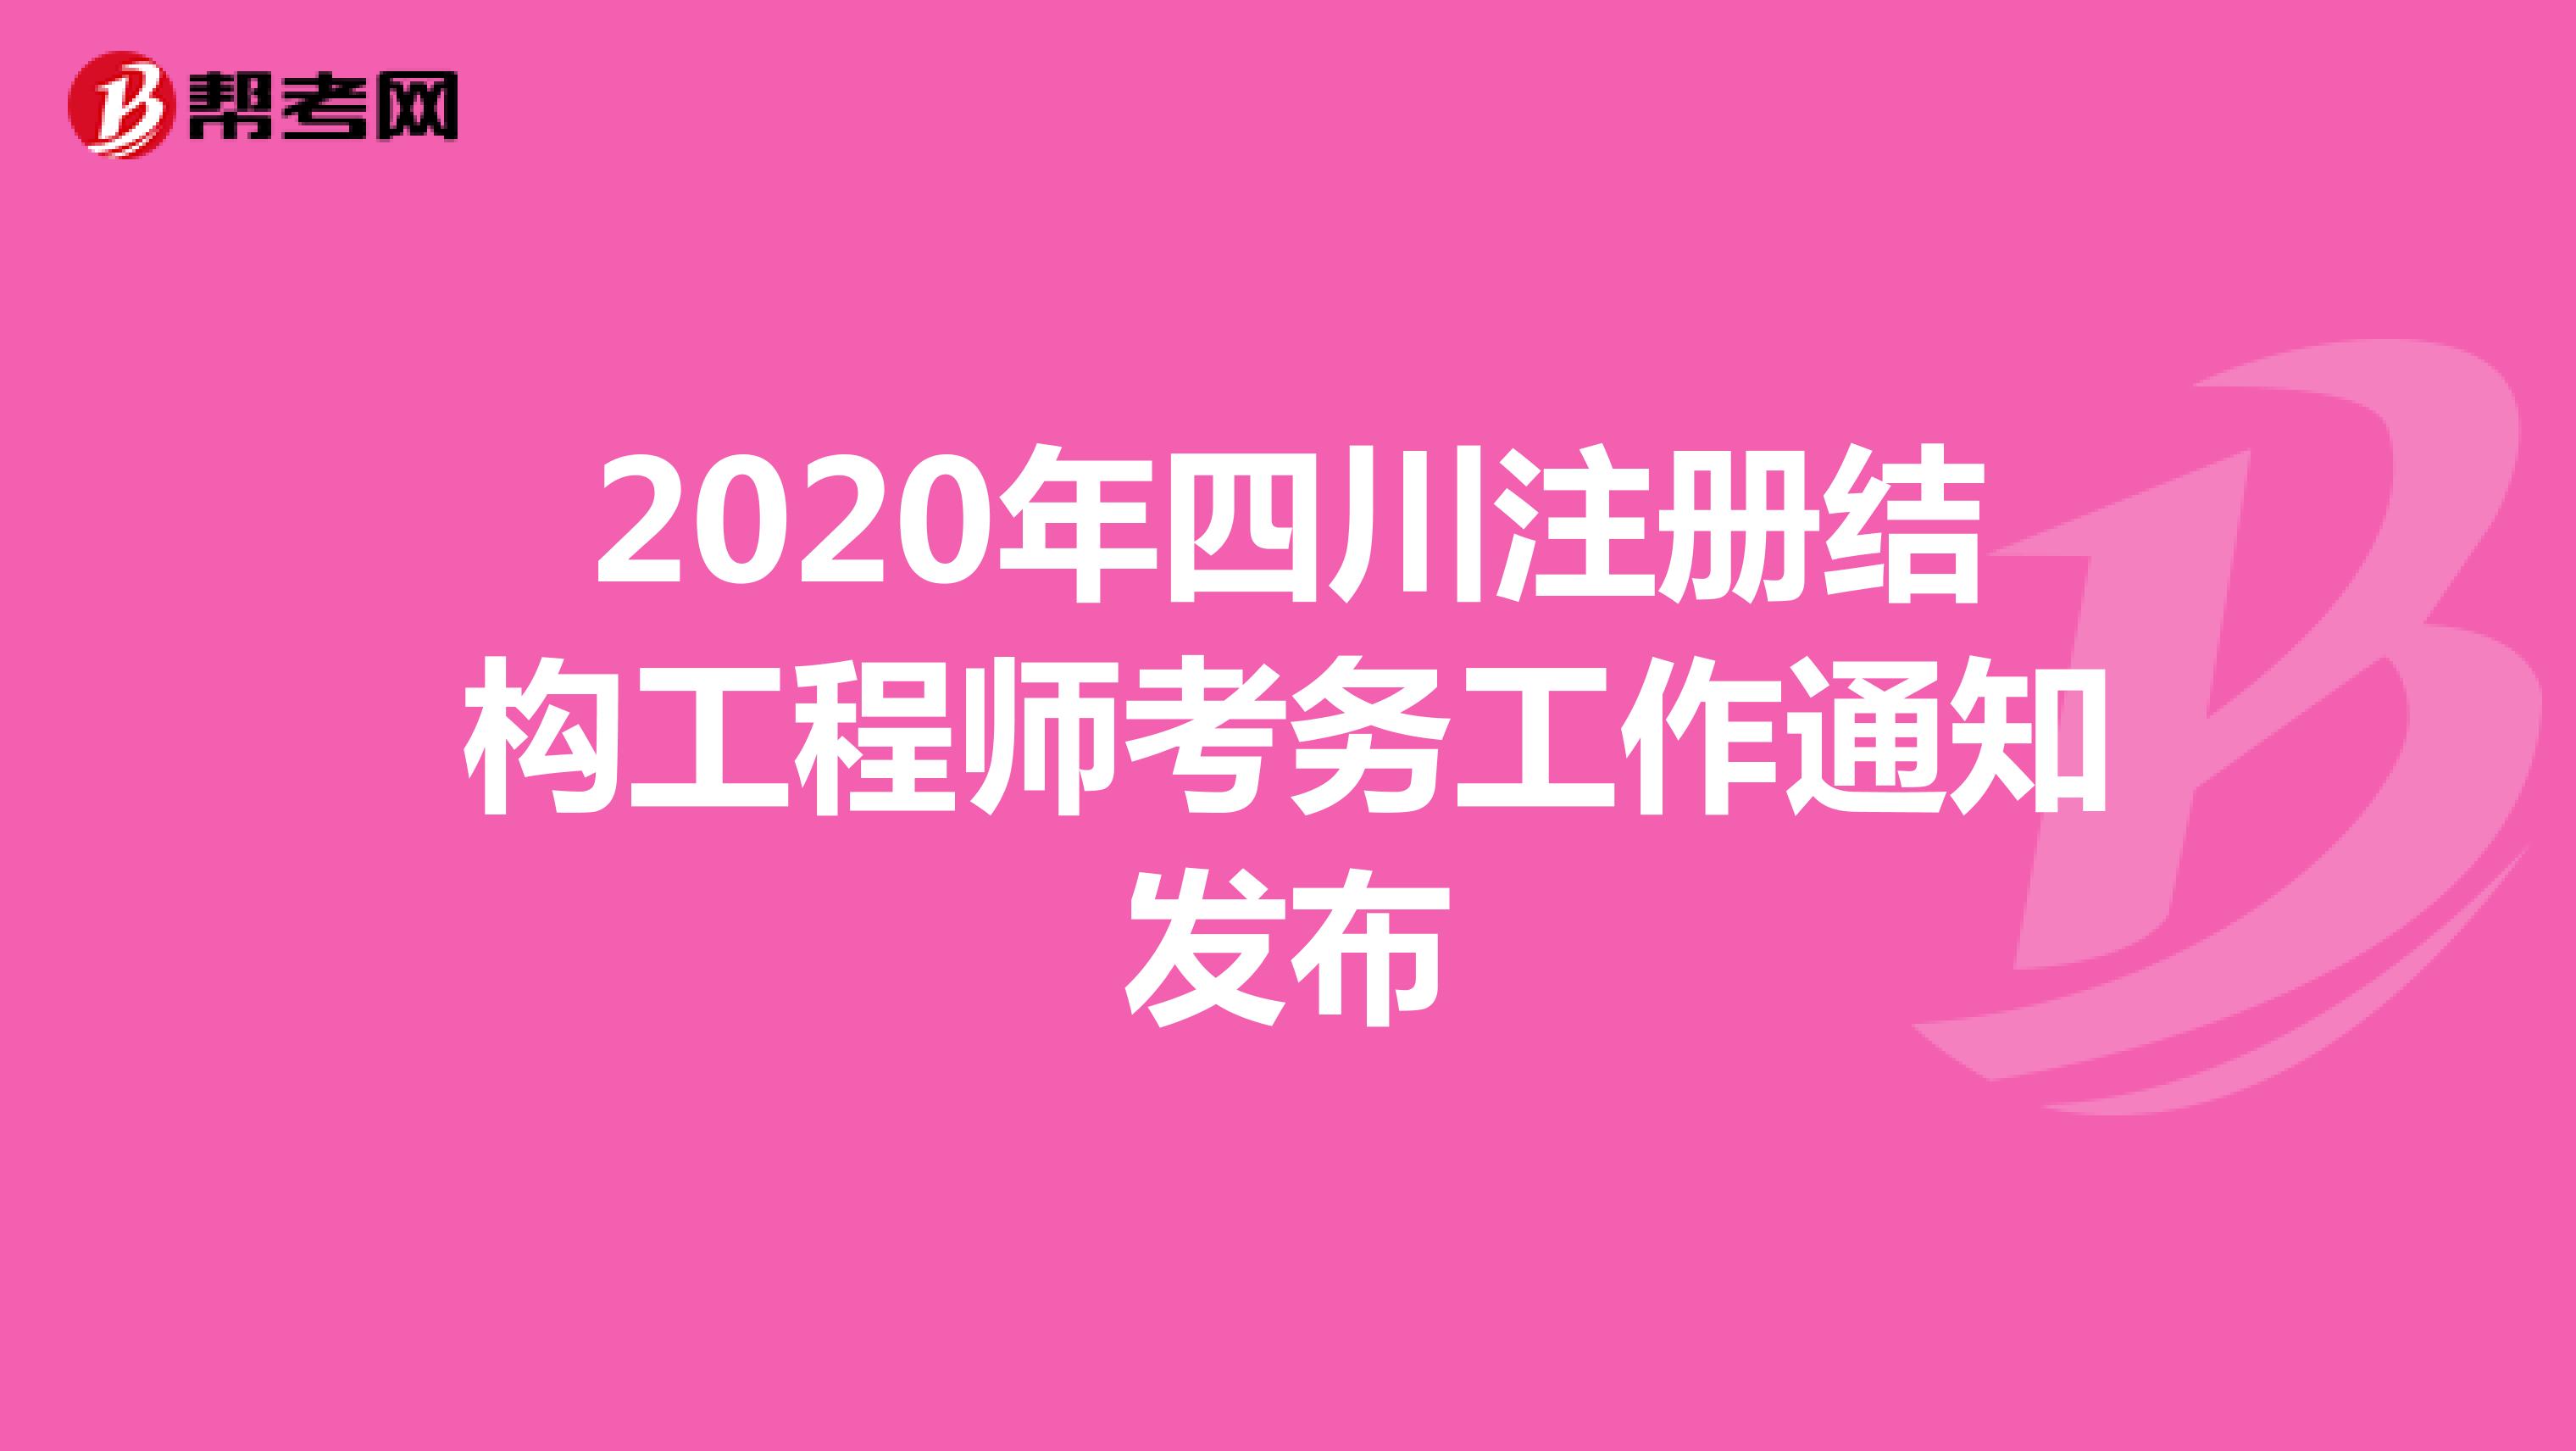 2020年四川注册结构工程师考务工作通知发布